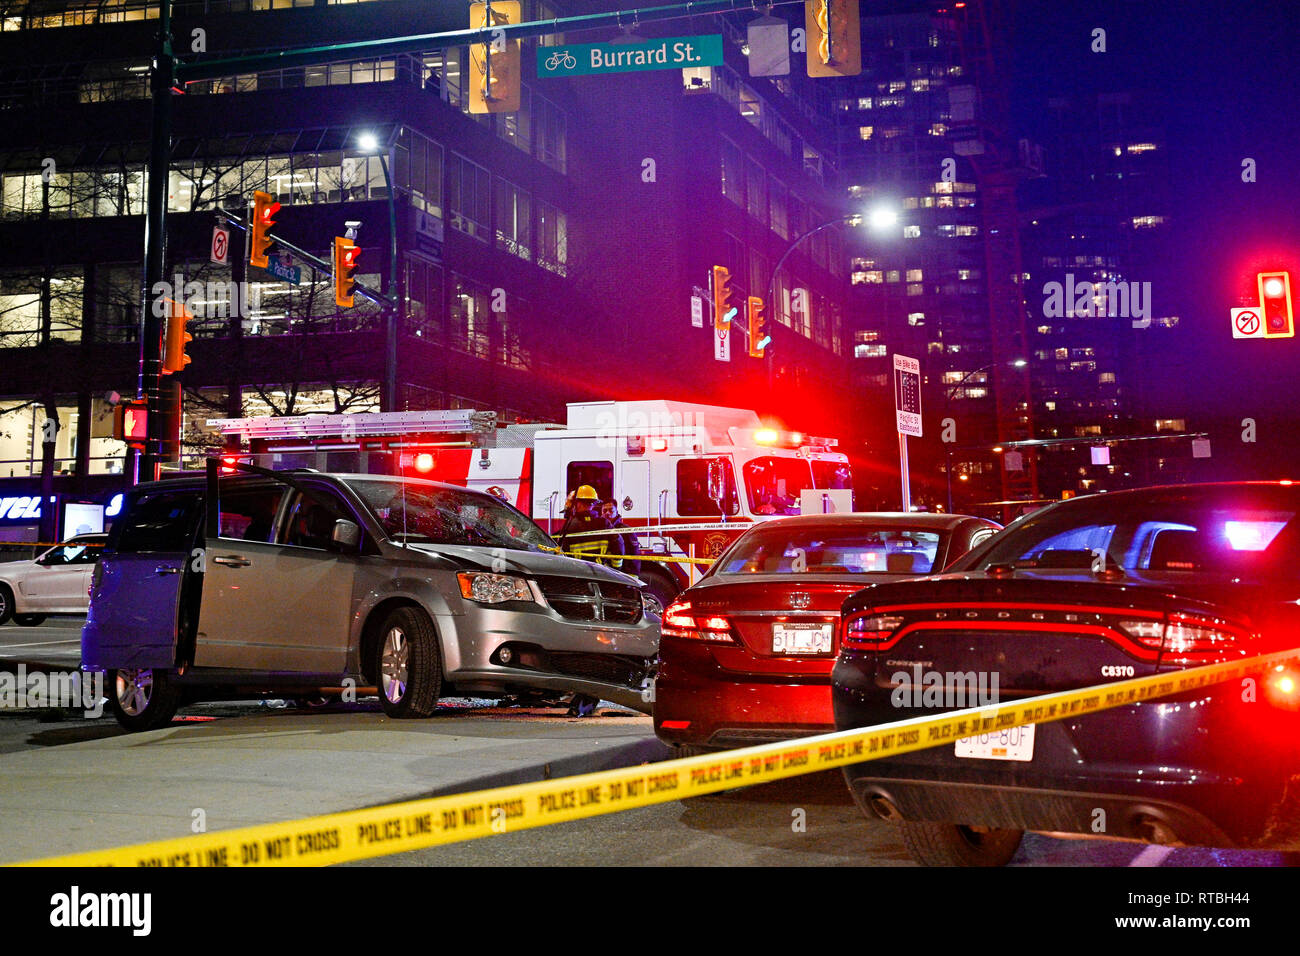 Location de scène d'accident, nuit, Vancouver, British Columbia, Canada Banque D'Images